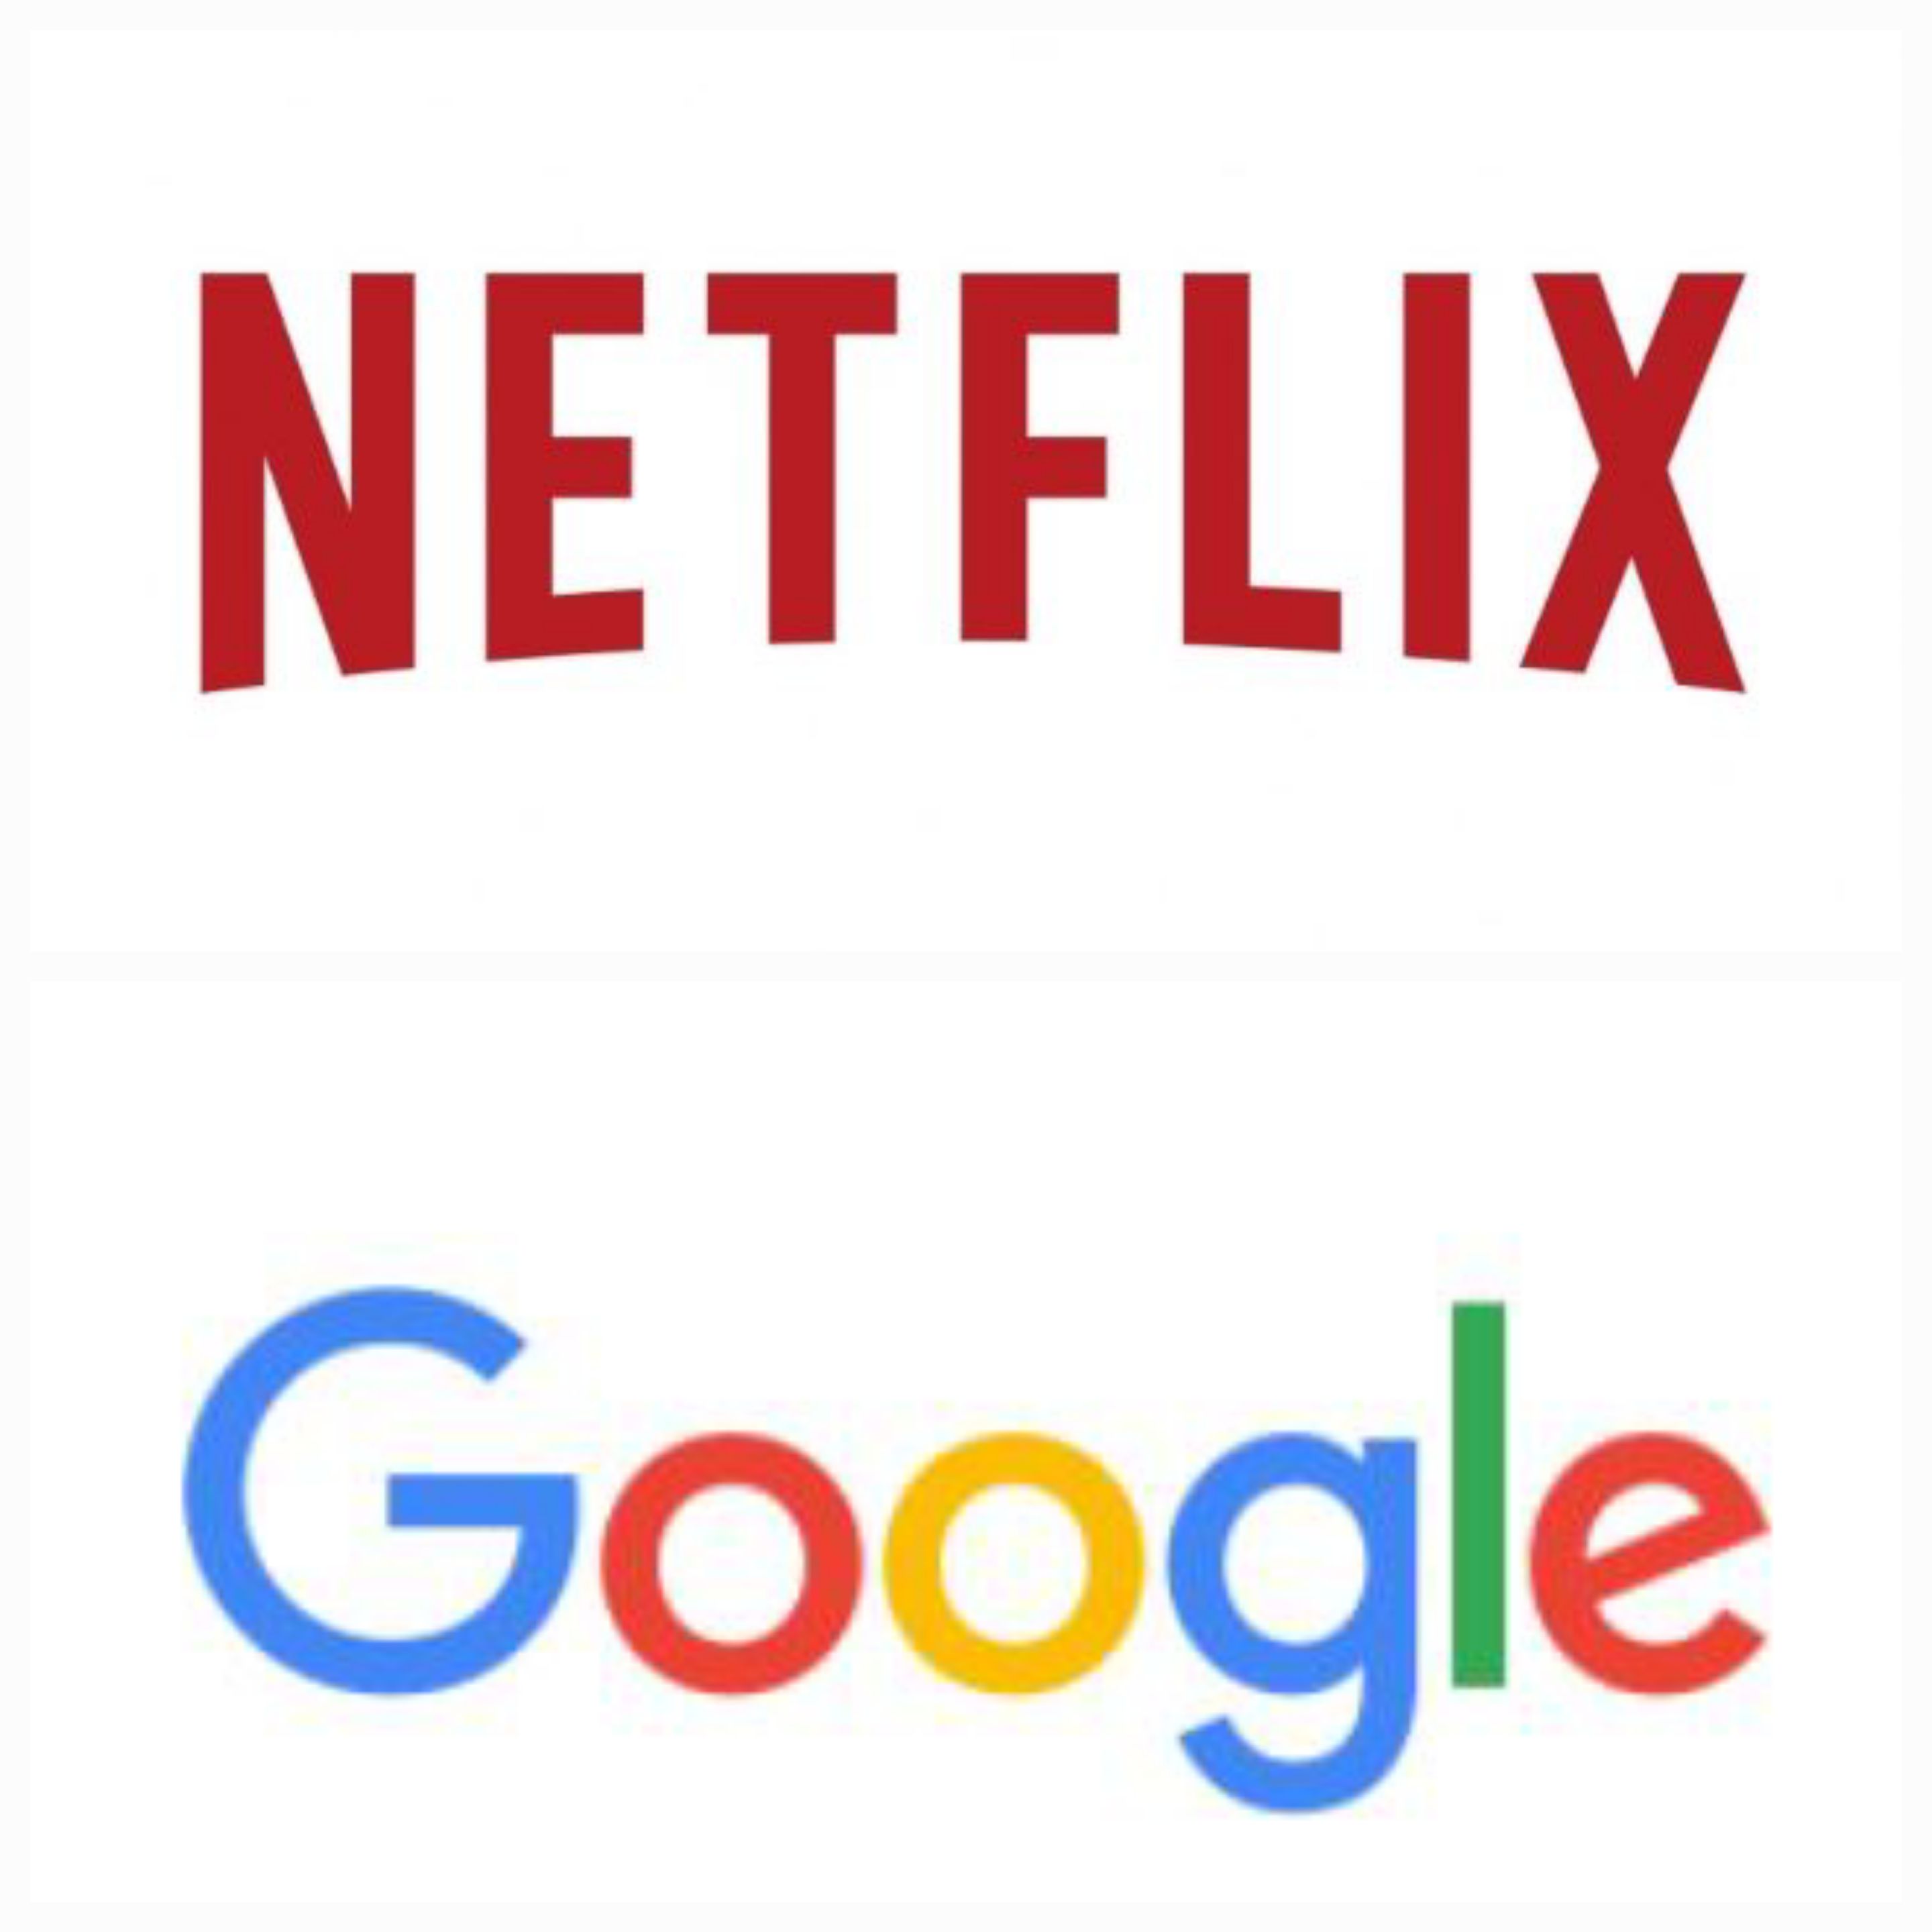 넷플릭스와 구글 로고